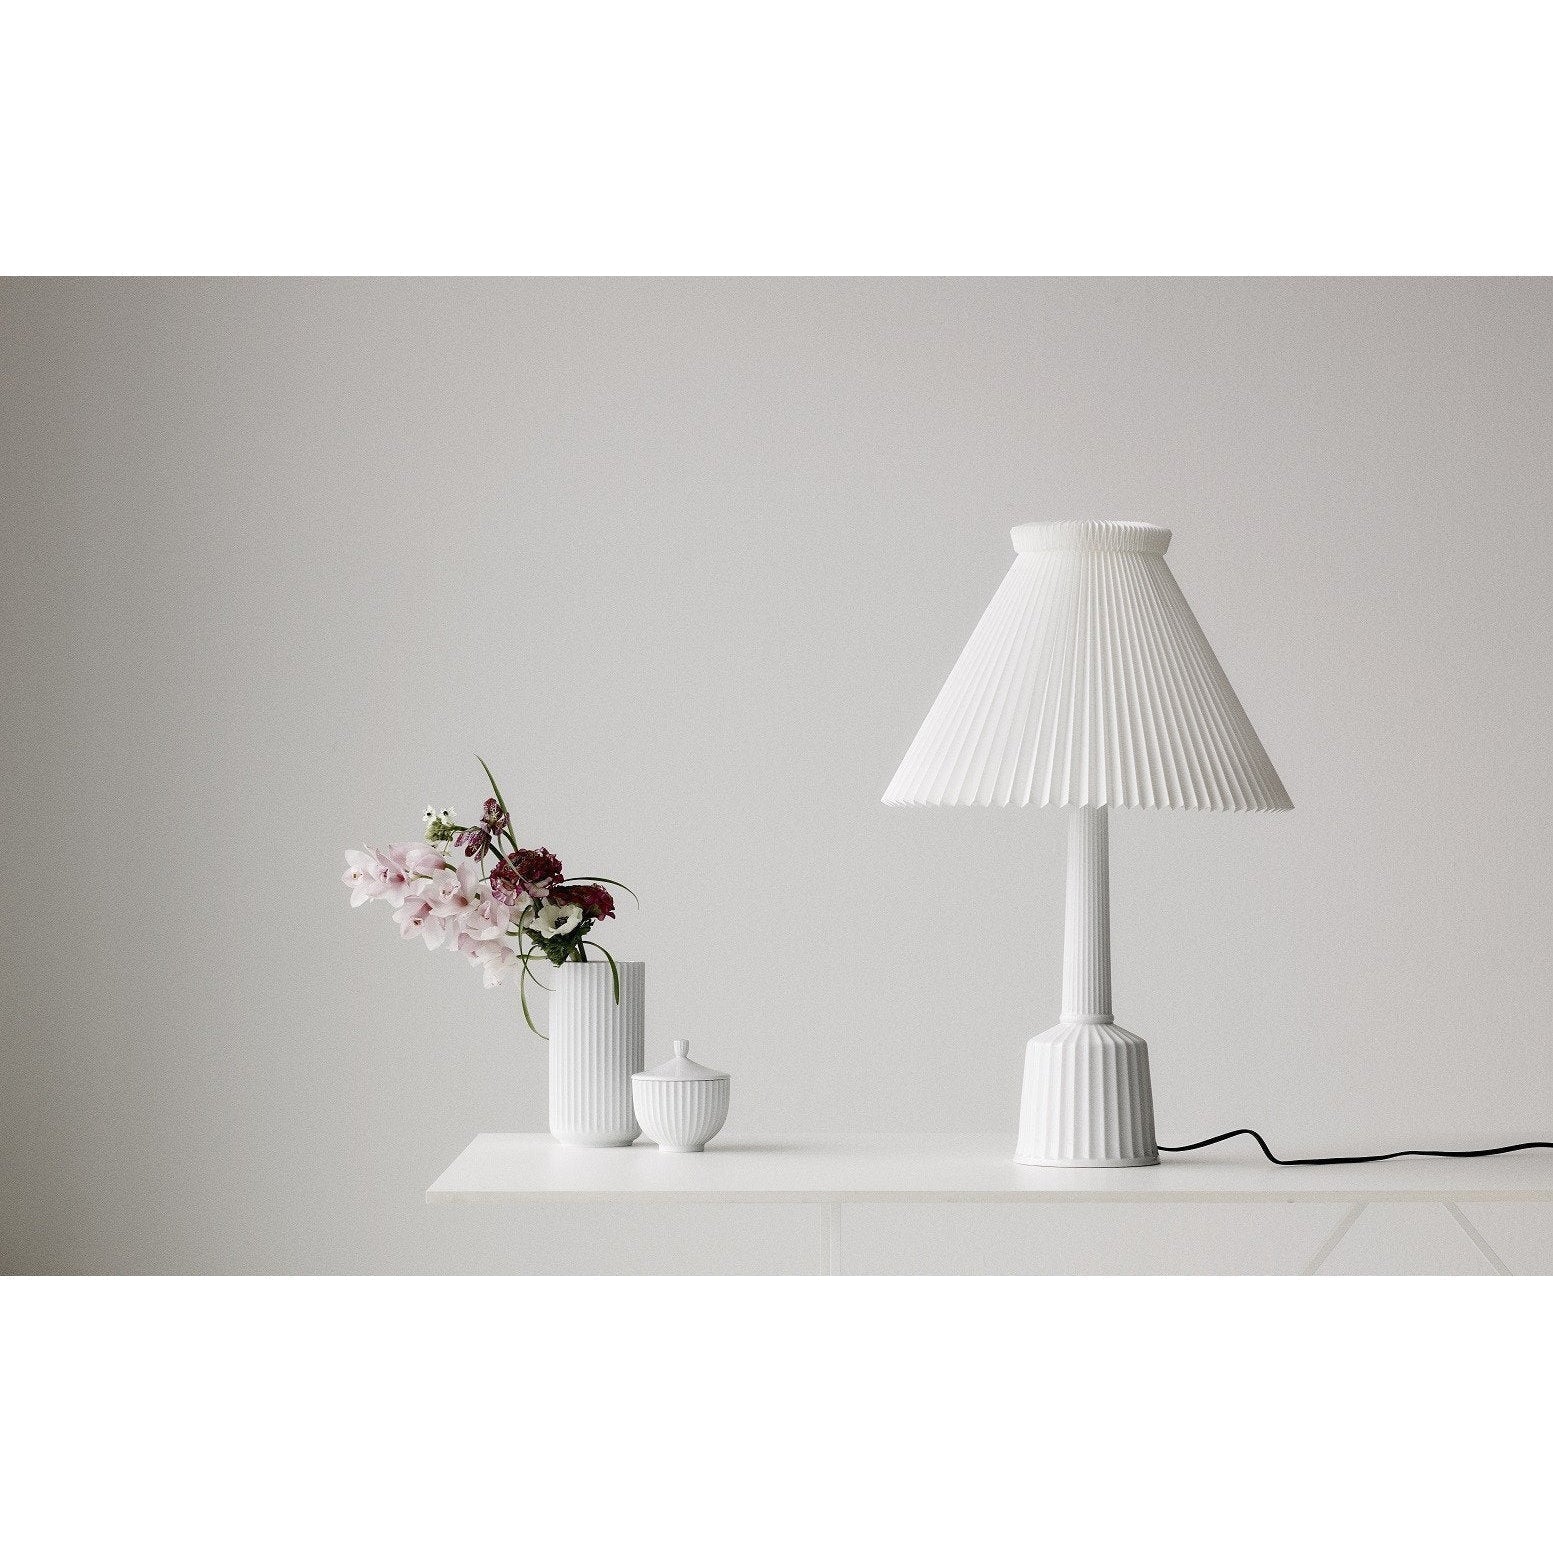 Lyngby Esben Klint Lamp White, 68 cm